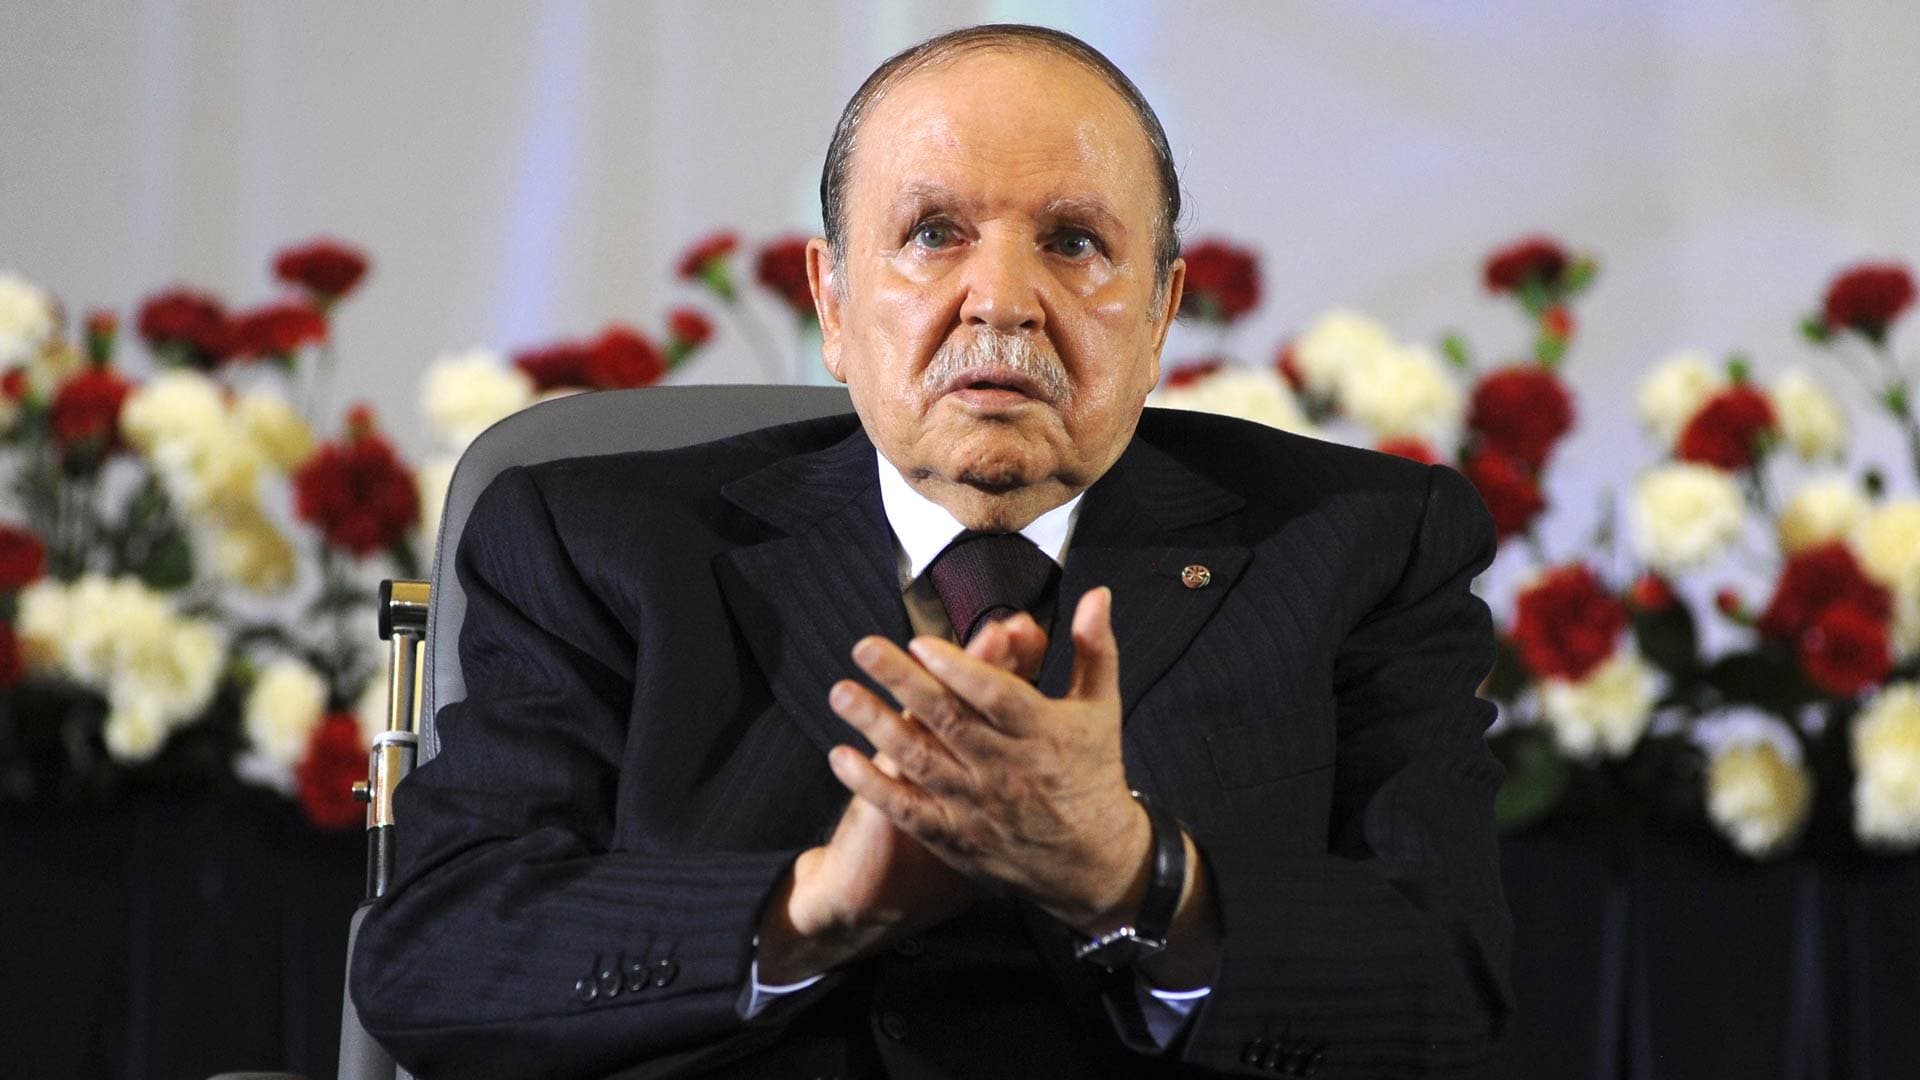 El Jefe del Ejército argelino pide la inhabilitación del presidente Bouteflika